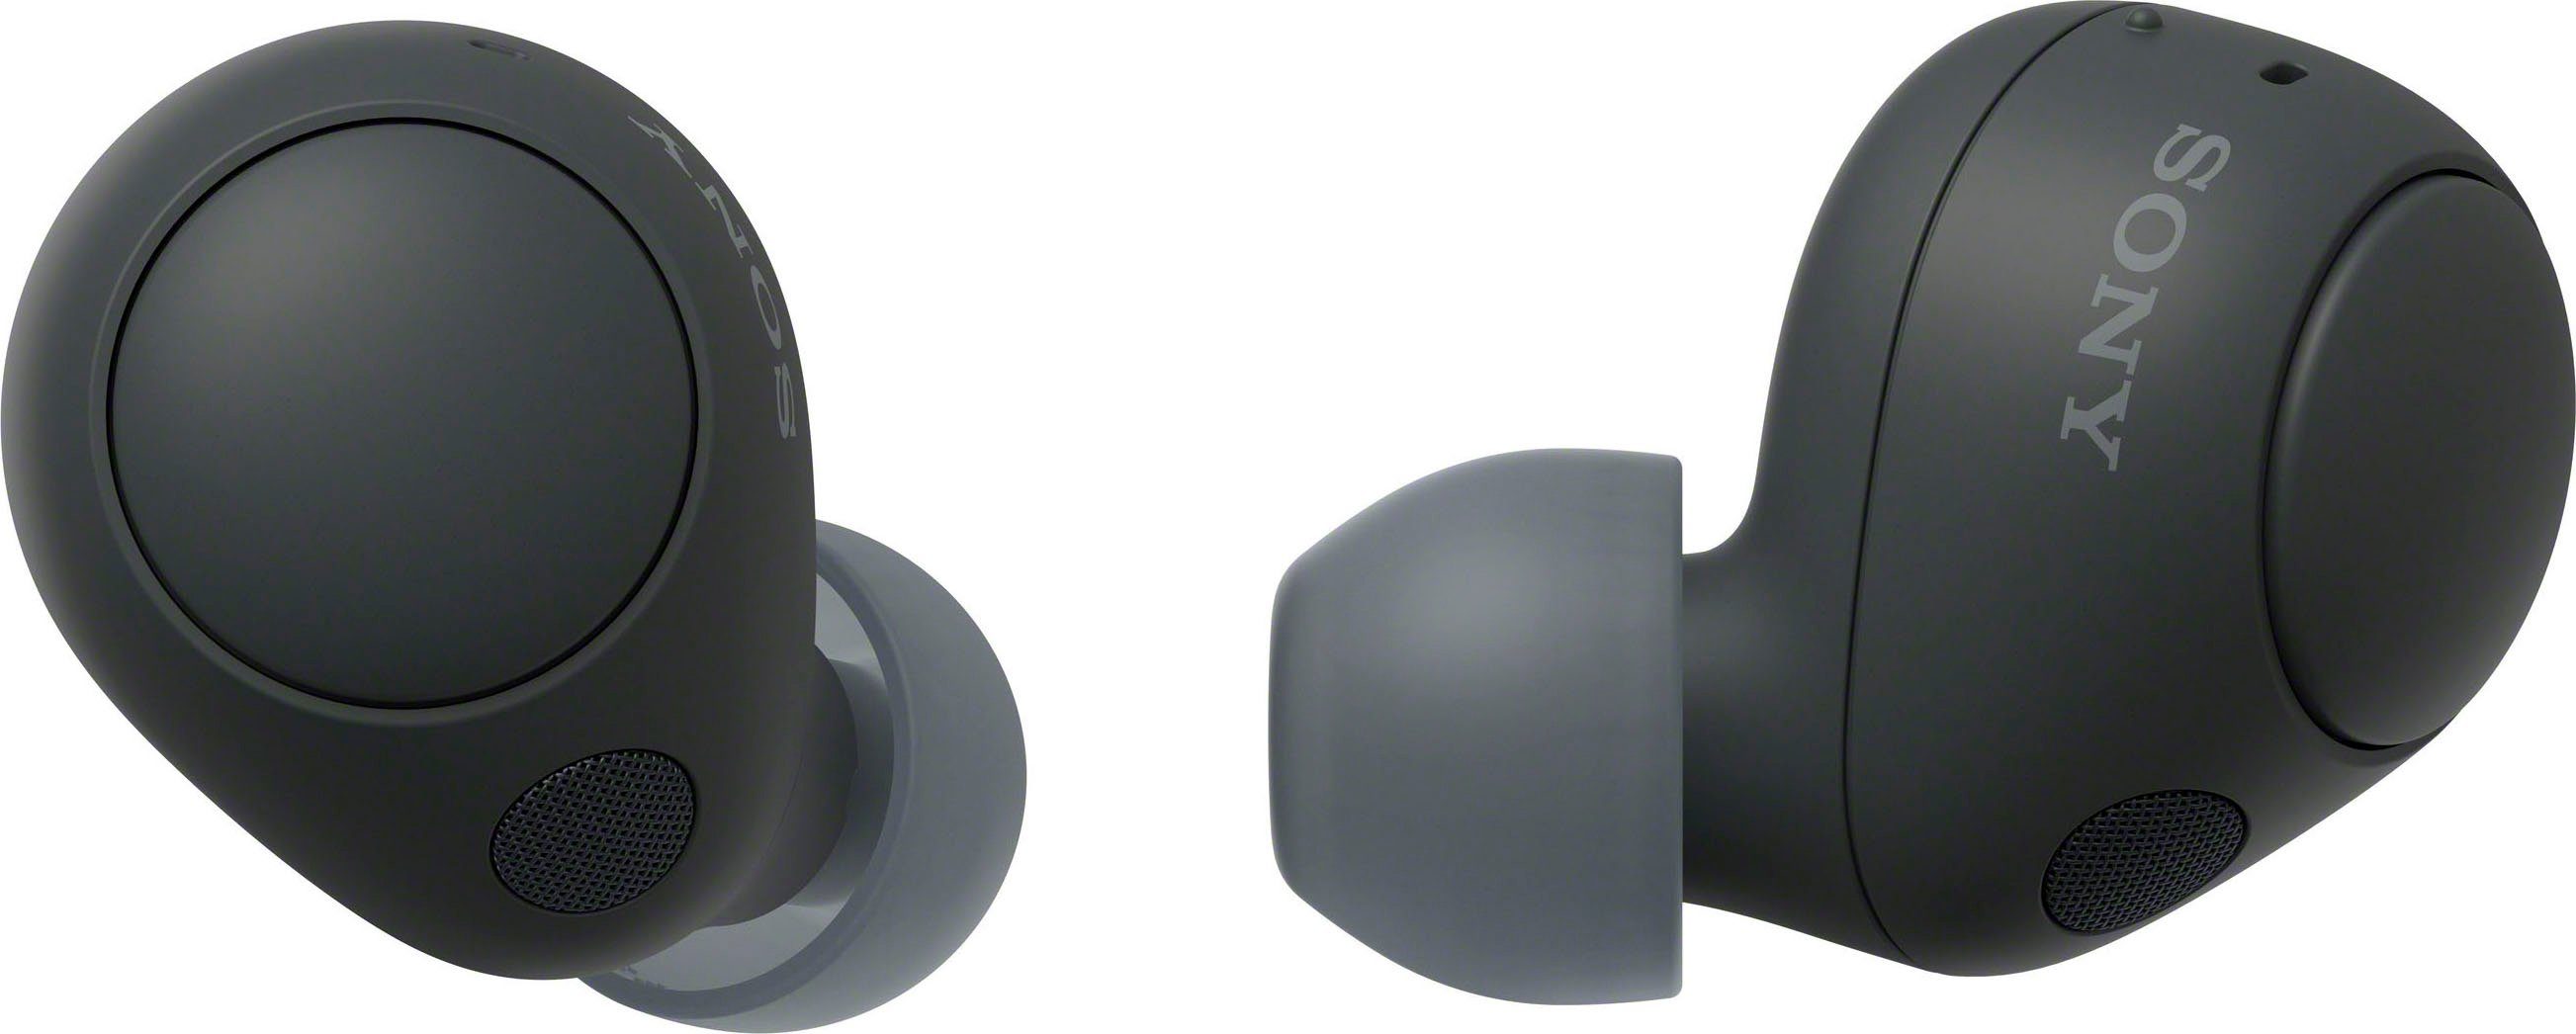 Akkulaufzeit, WF-C700N 20 Std. In-Ear-Kopfhörer (Noise-Cancelling, Gojischwarz Bluetooth, Connection) bis Multipoint Sony